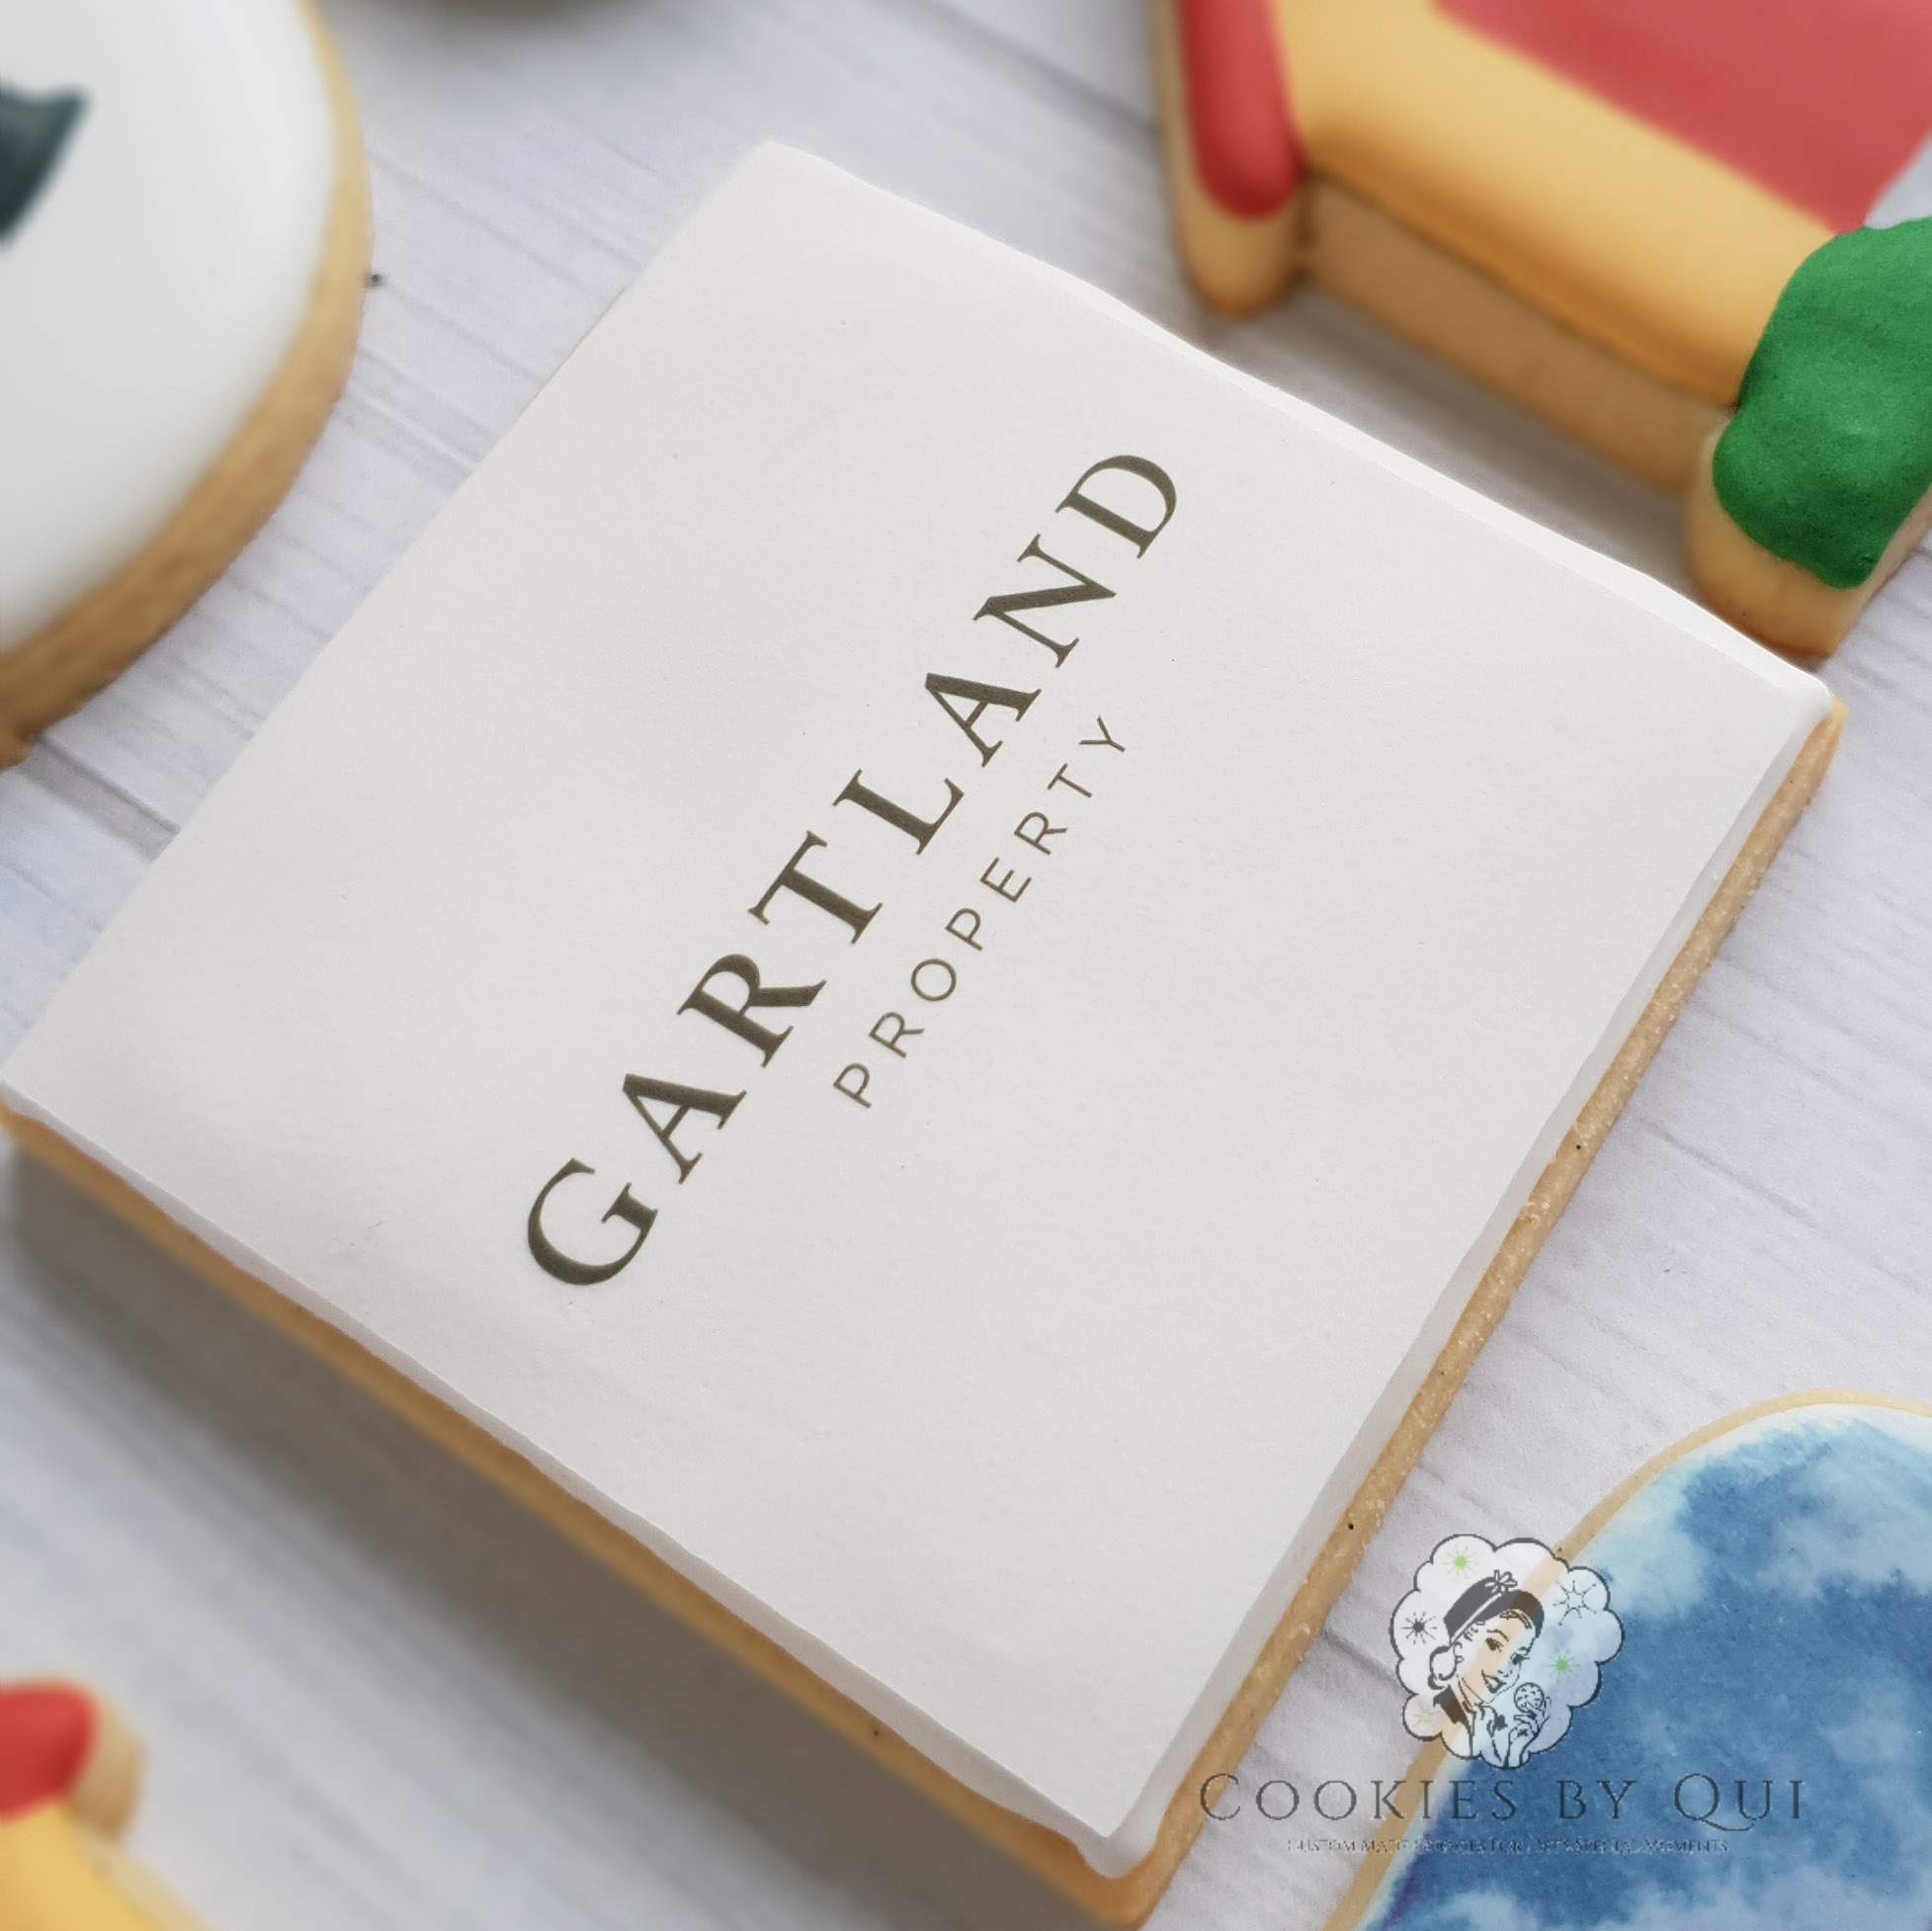 Gartland Property Edible Image Logo Cookies